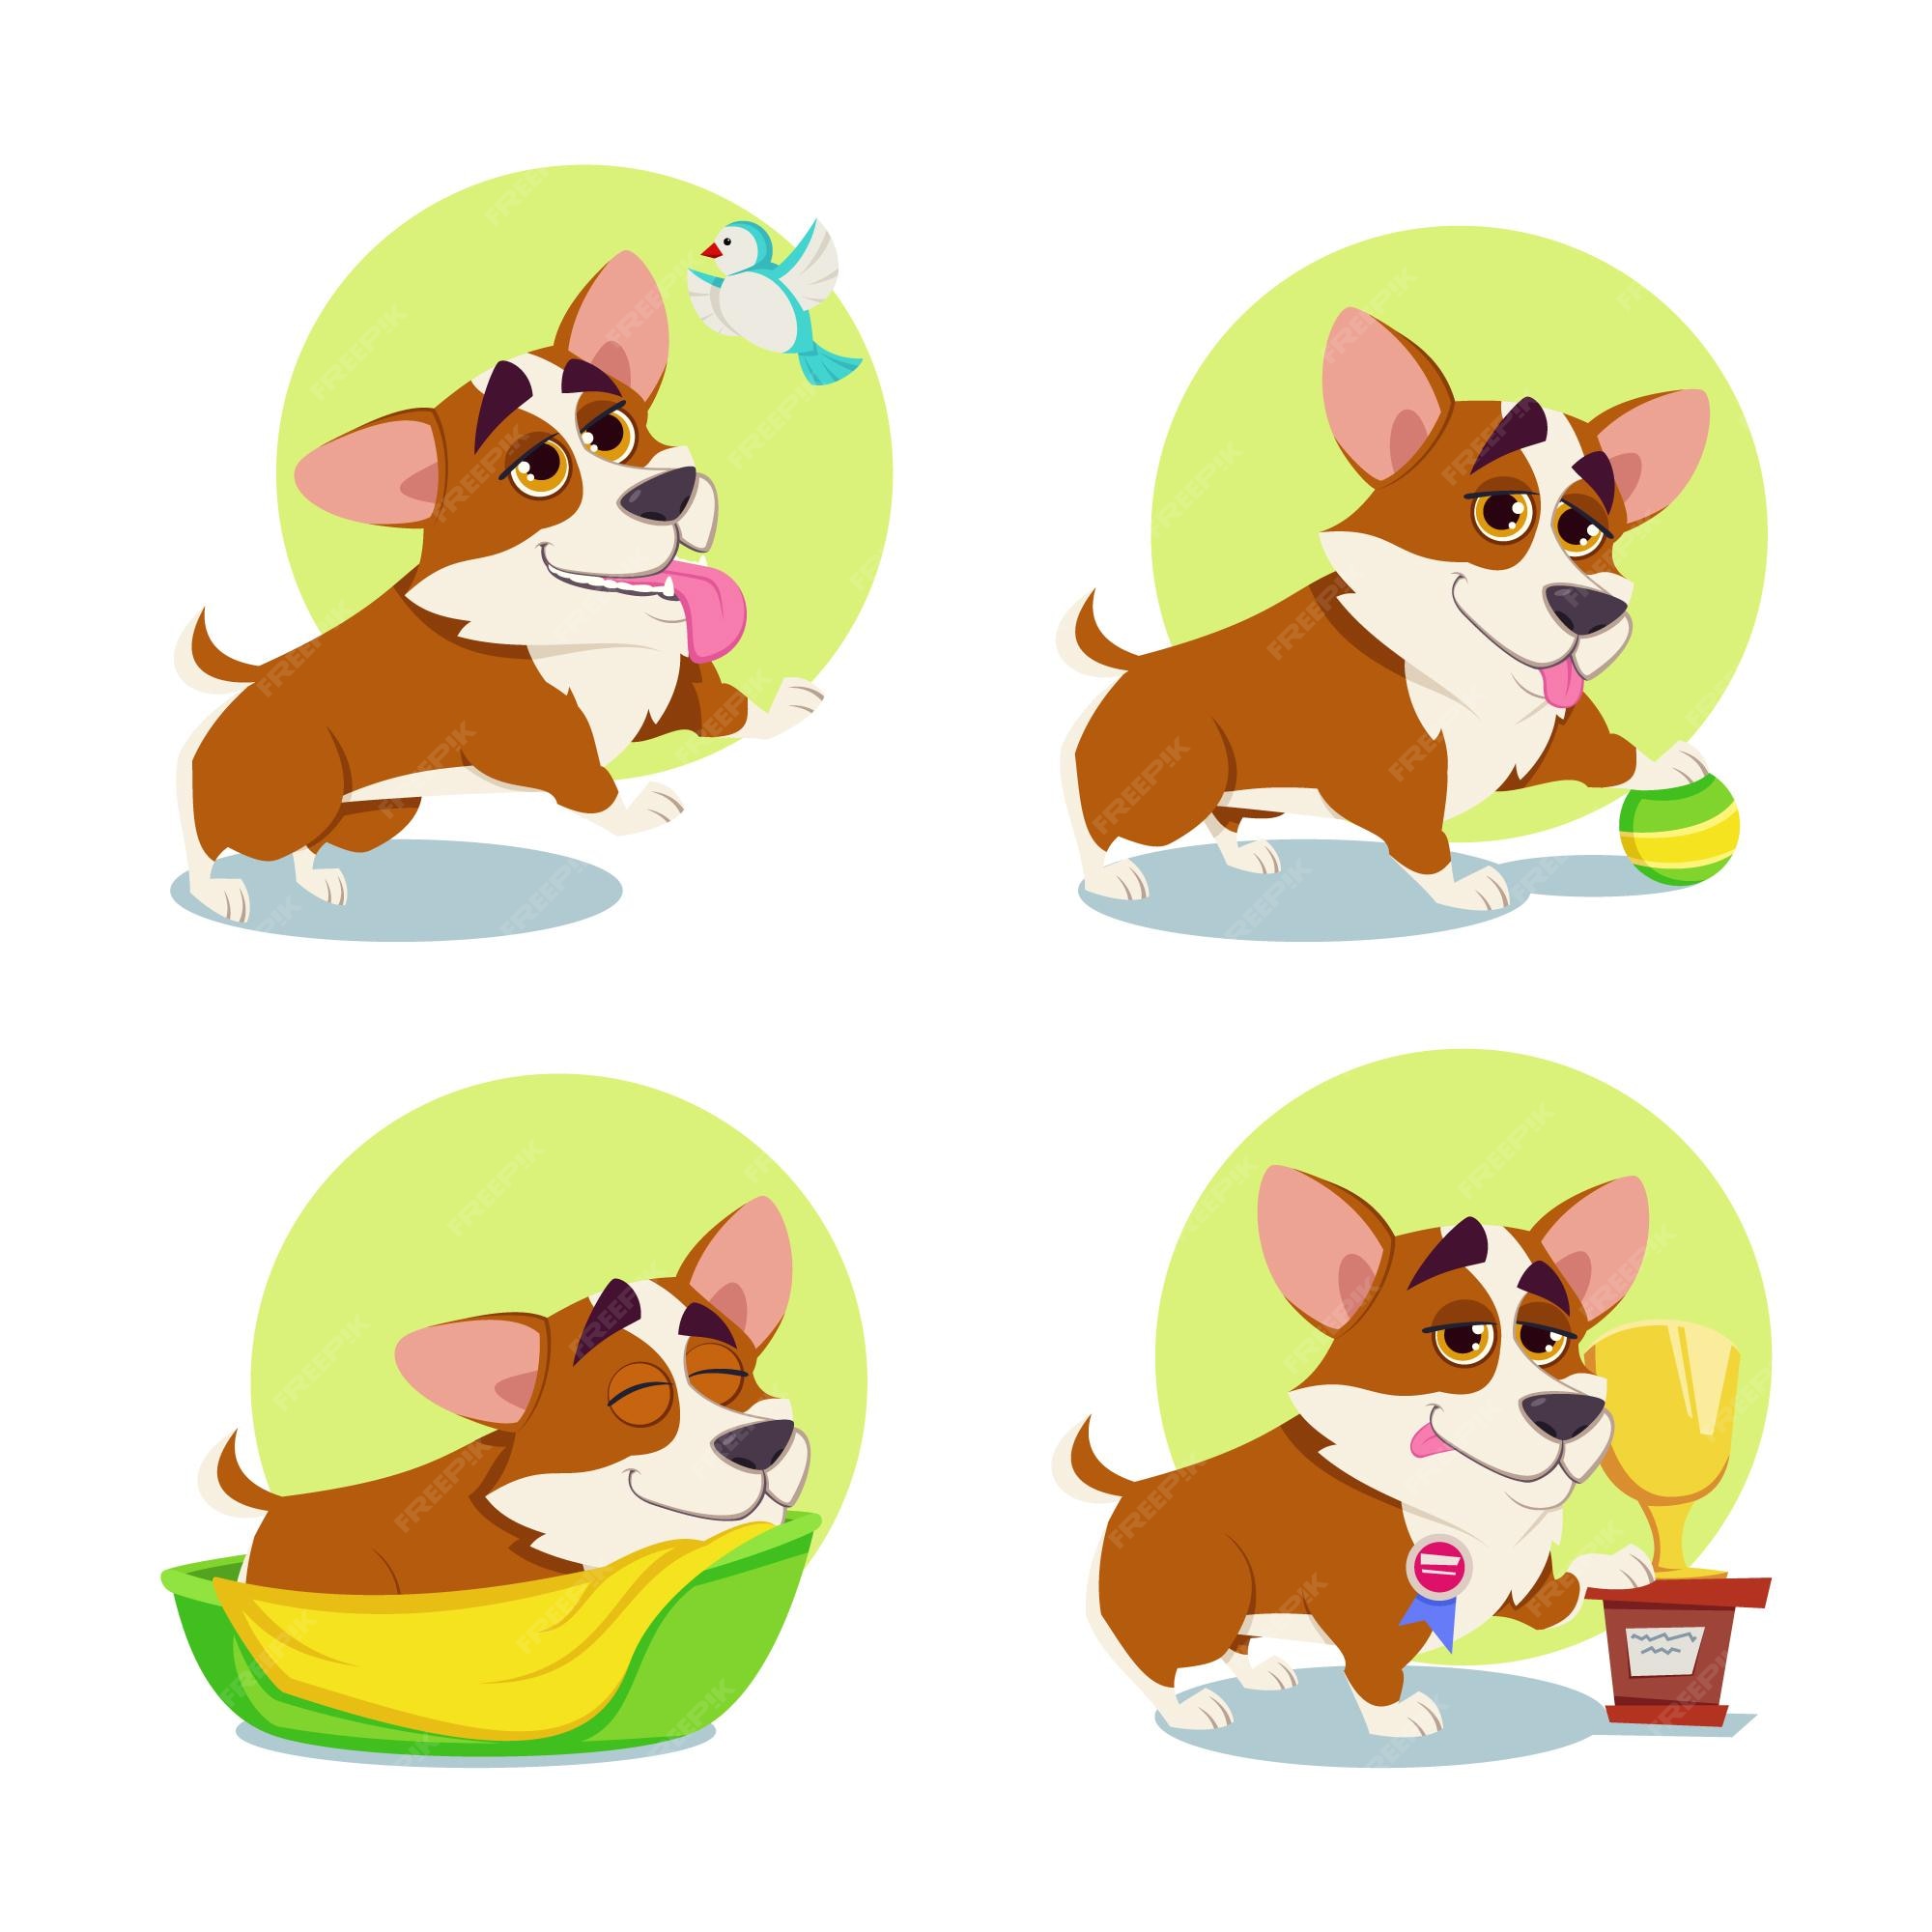 Dog barking Vectors & Illustrations for Free Download | Freepik